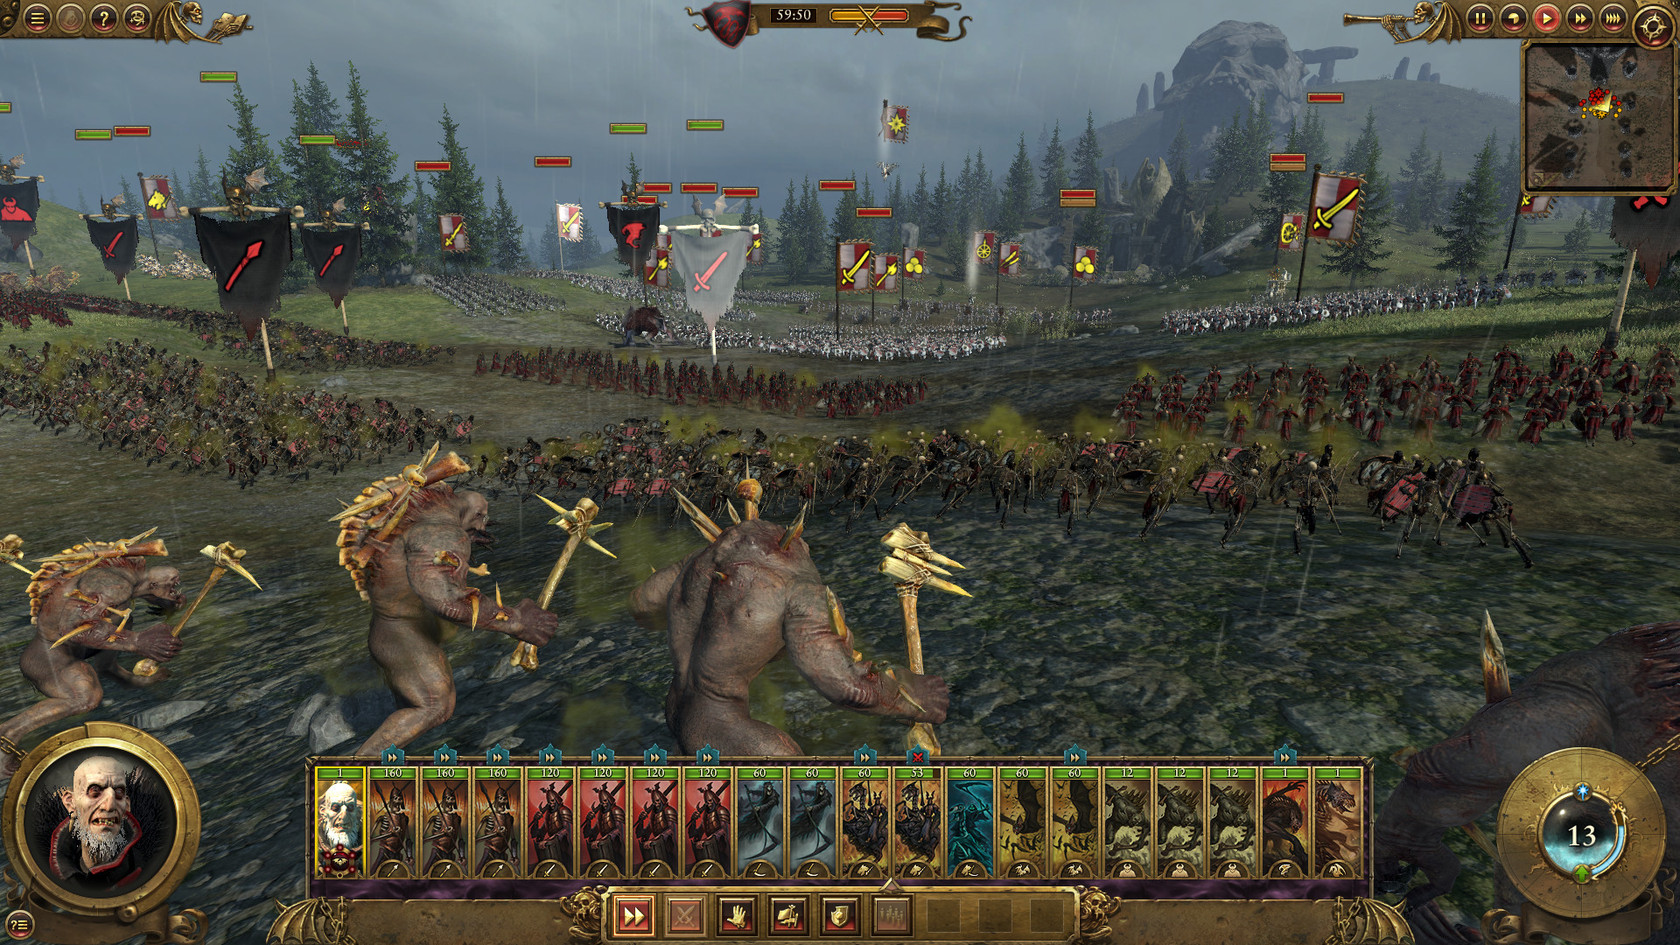 Total War: Warhammer - Wikipedia